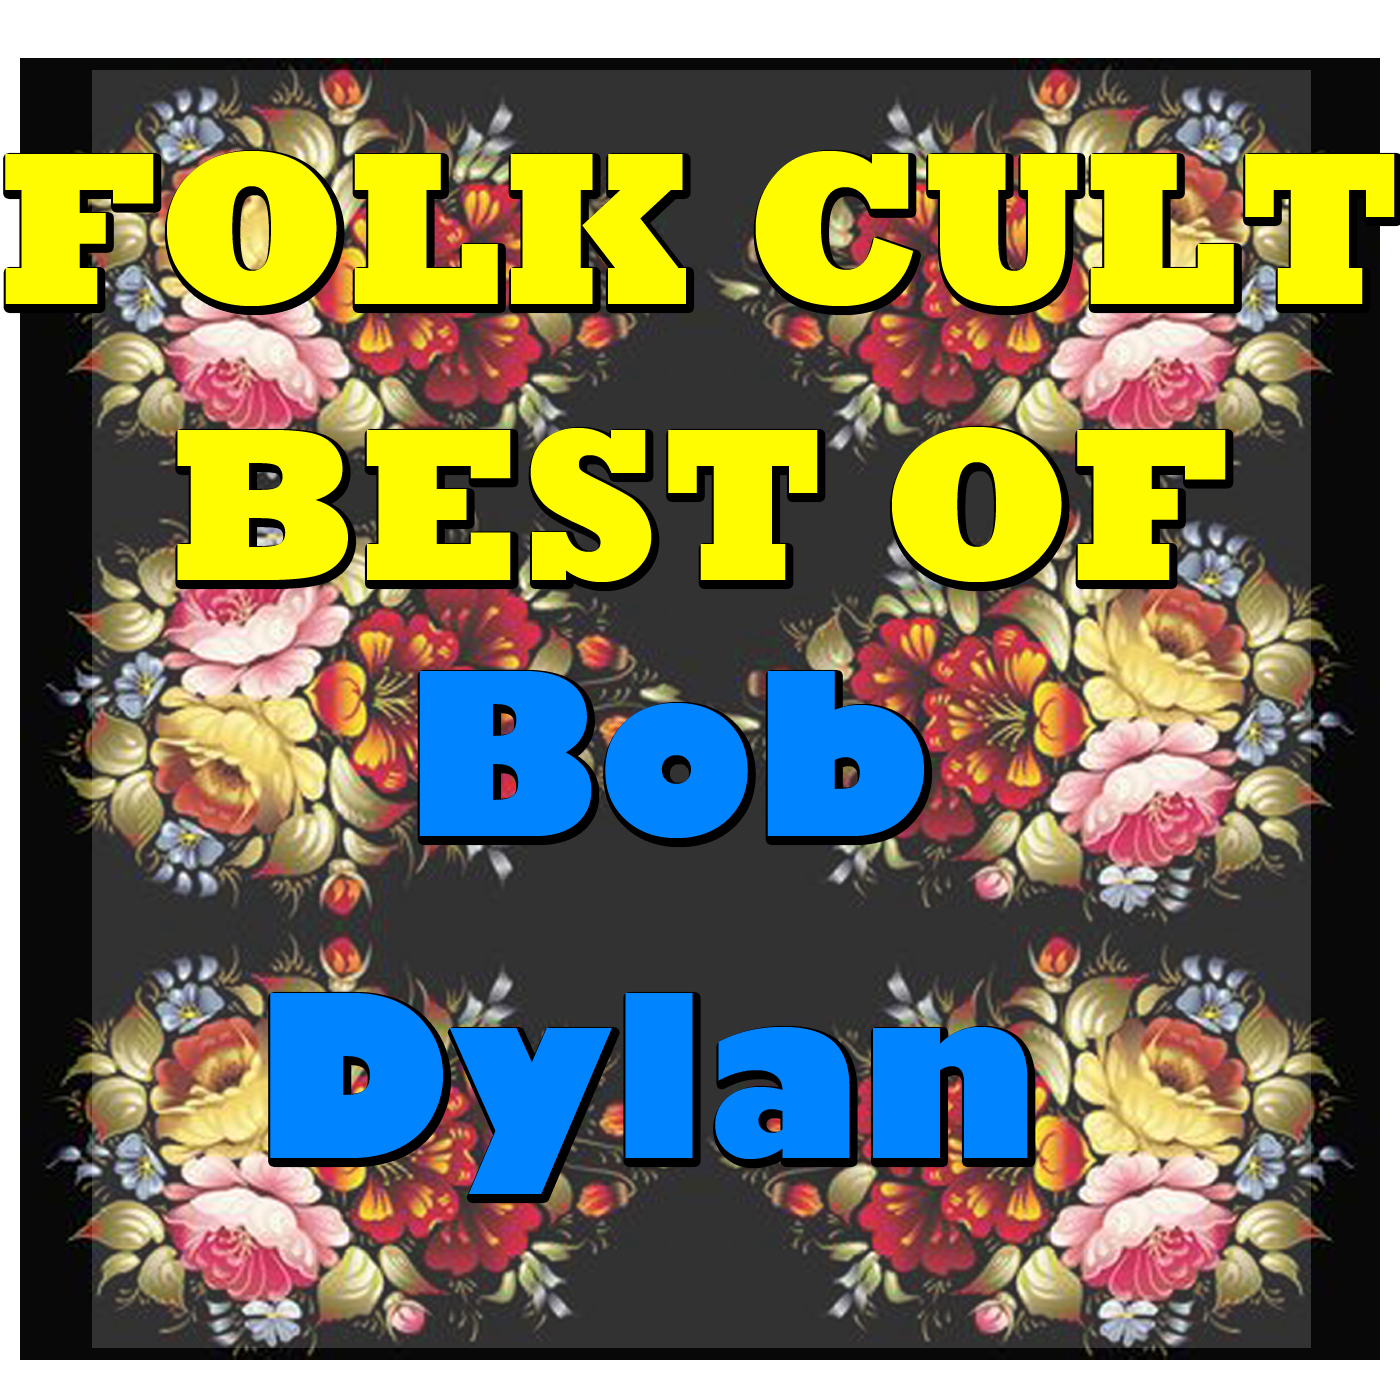 Folk Cult: Best Of Bob Dylan (Live)